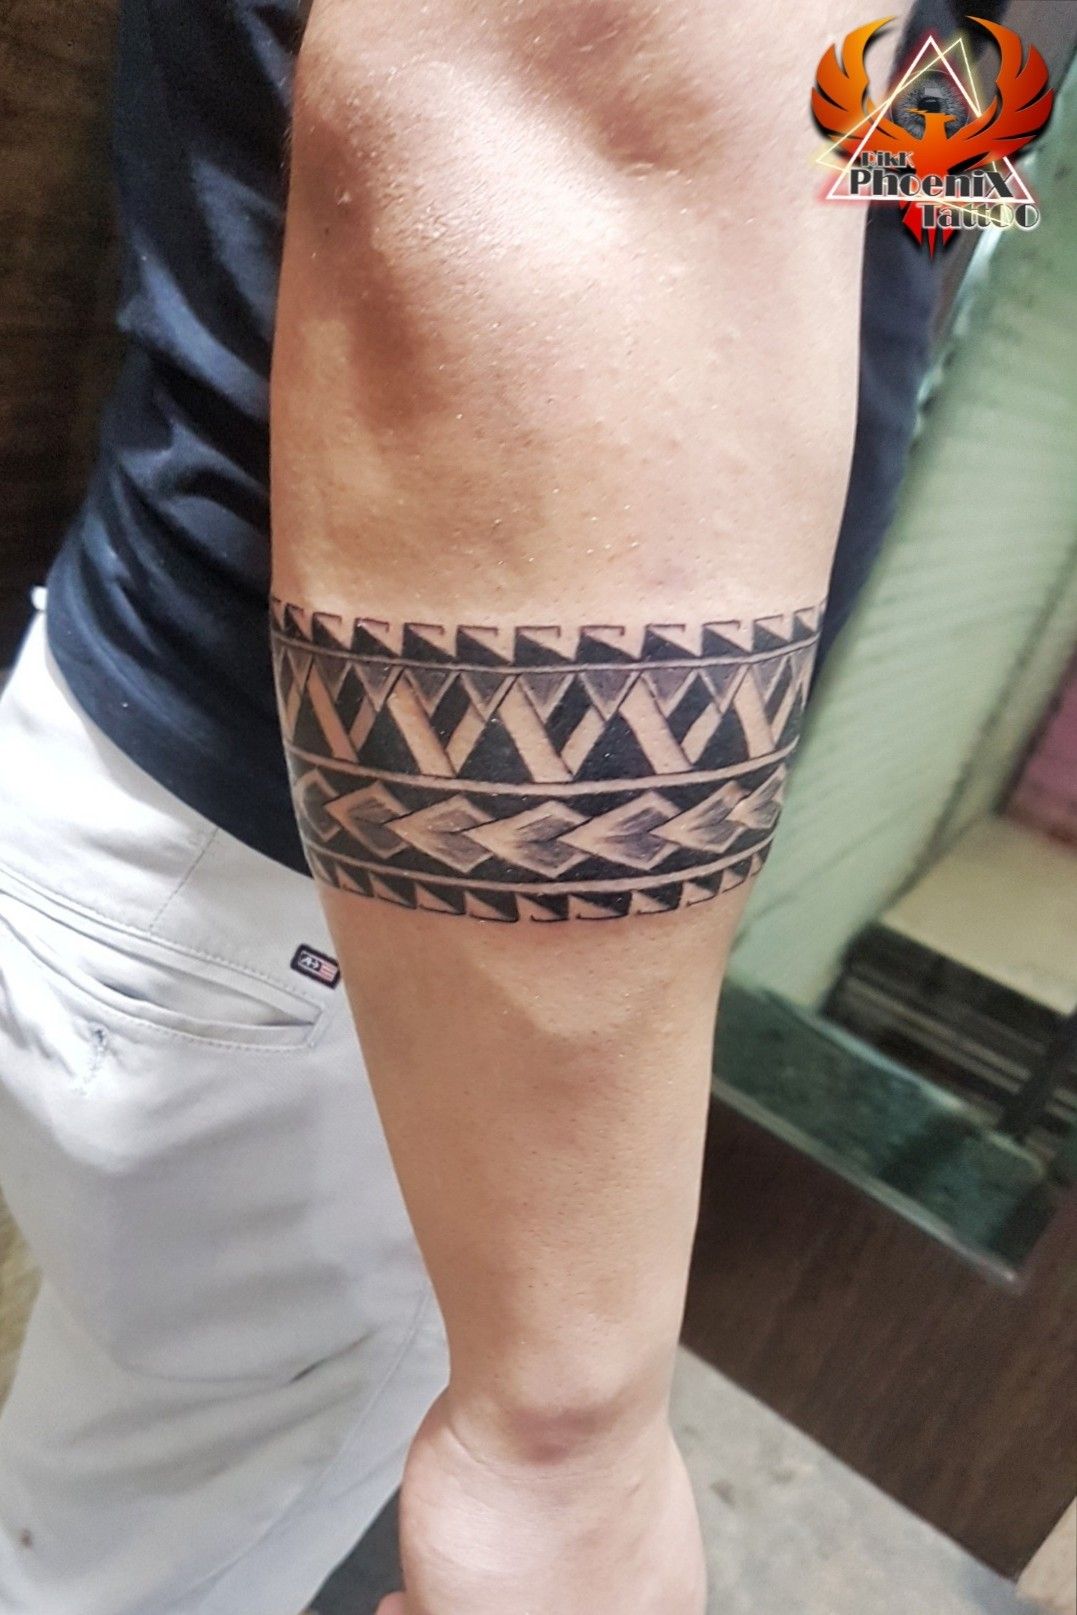 diep kunstmest Spotlijster Tattoo uploaded by Rikk Phoenix Tattoo • #maoriband #maori  #polynesiantattoo #forearmtattoo #band #tattoo #polynesianband #bandtattoo # armband #armbandtattoo #lining #triangle #shading #tattooforgirls  #tattoolife #tattooformen #tattooforboys #design ...